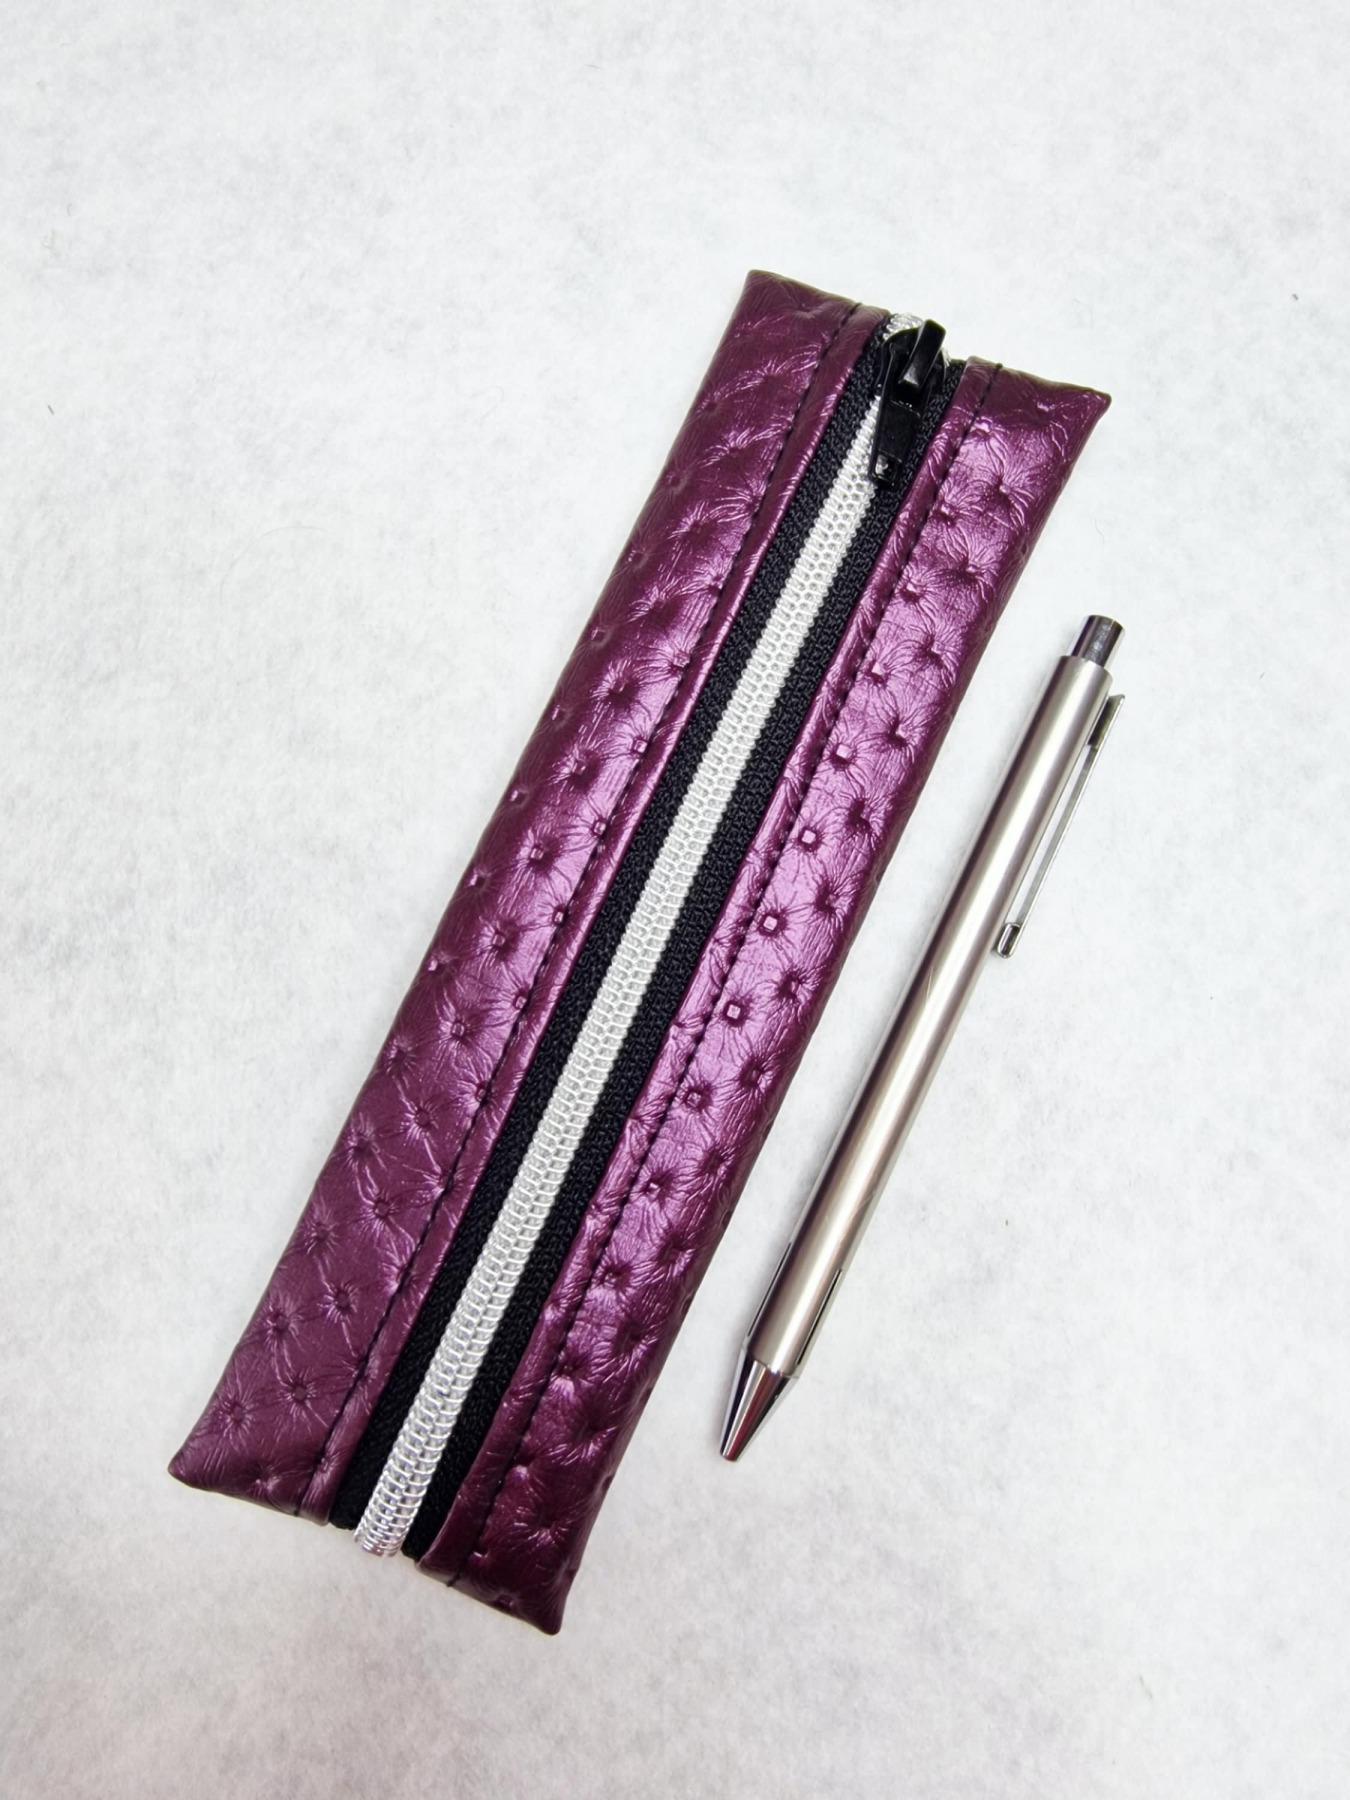 Stiftemäppchen mit oder ohne Gummiband Federmäppchen für Stifte Bullet Journal Kosmetiktasche